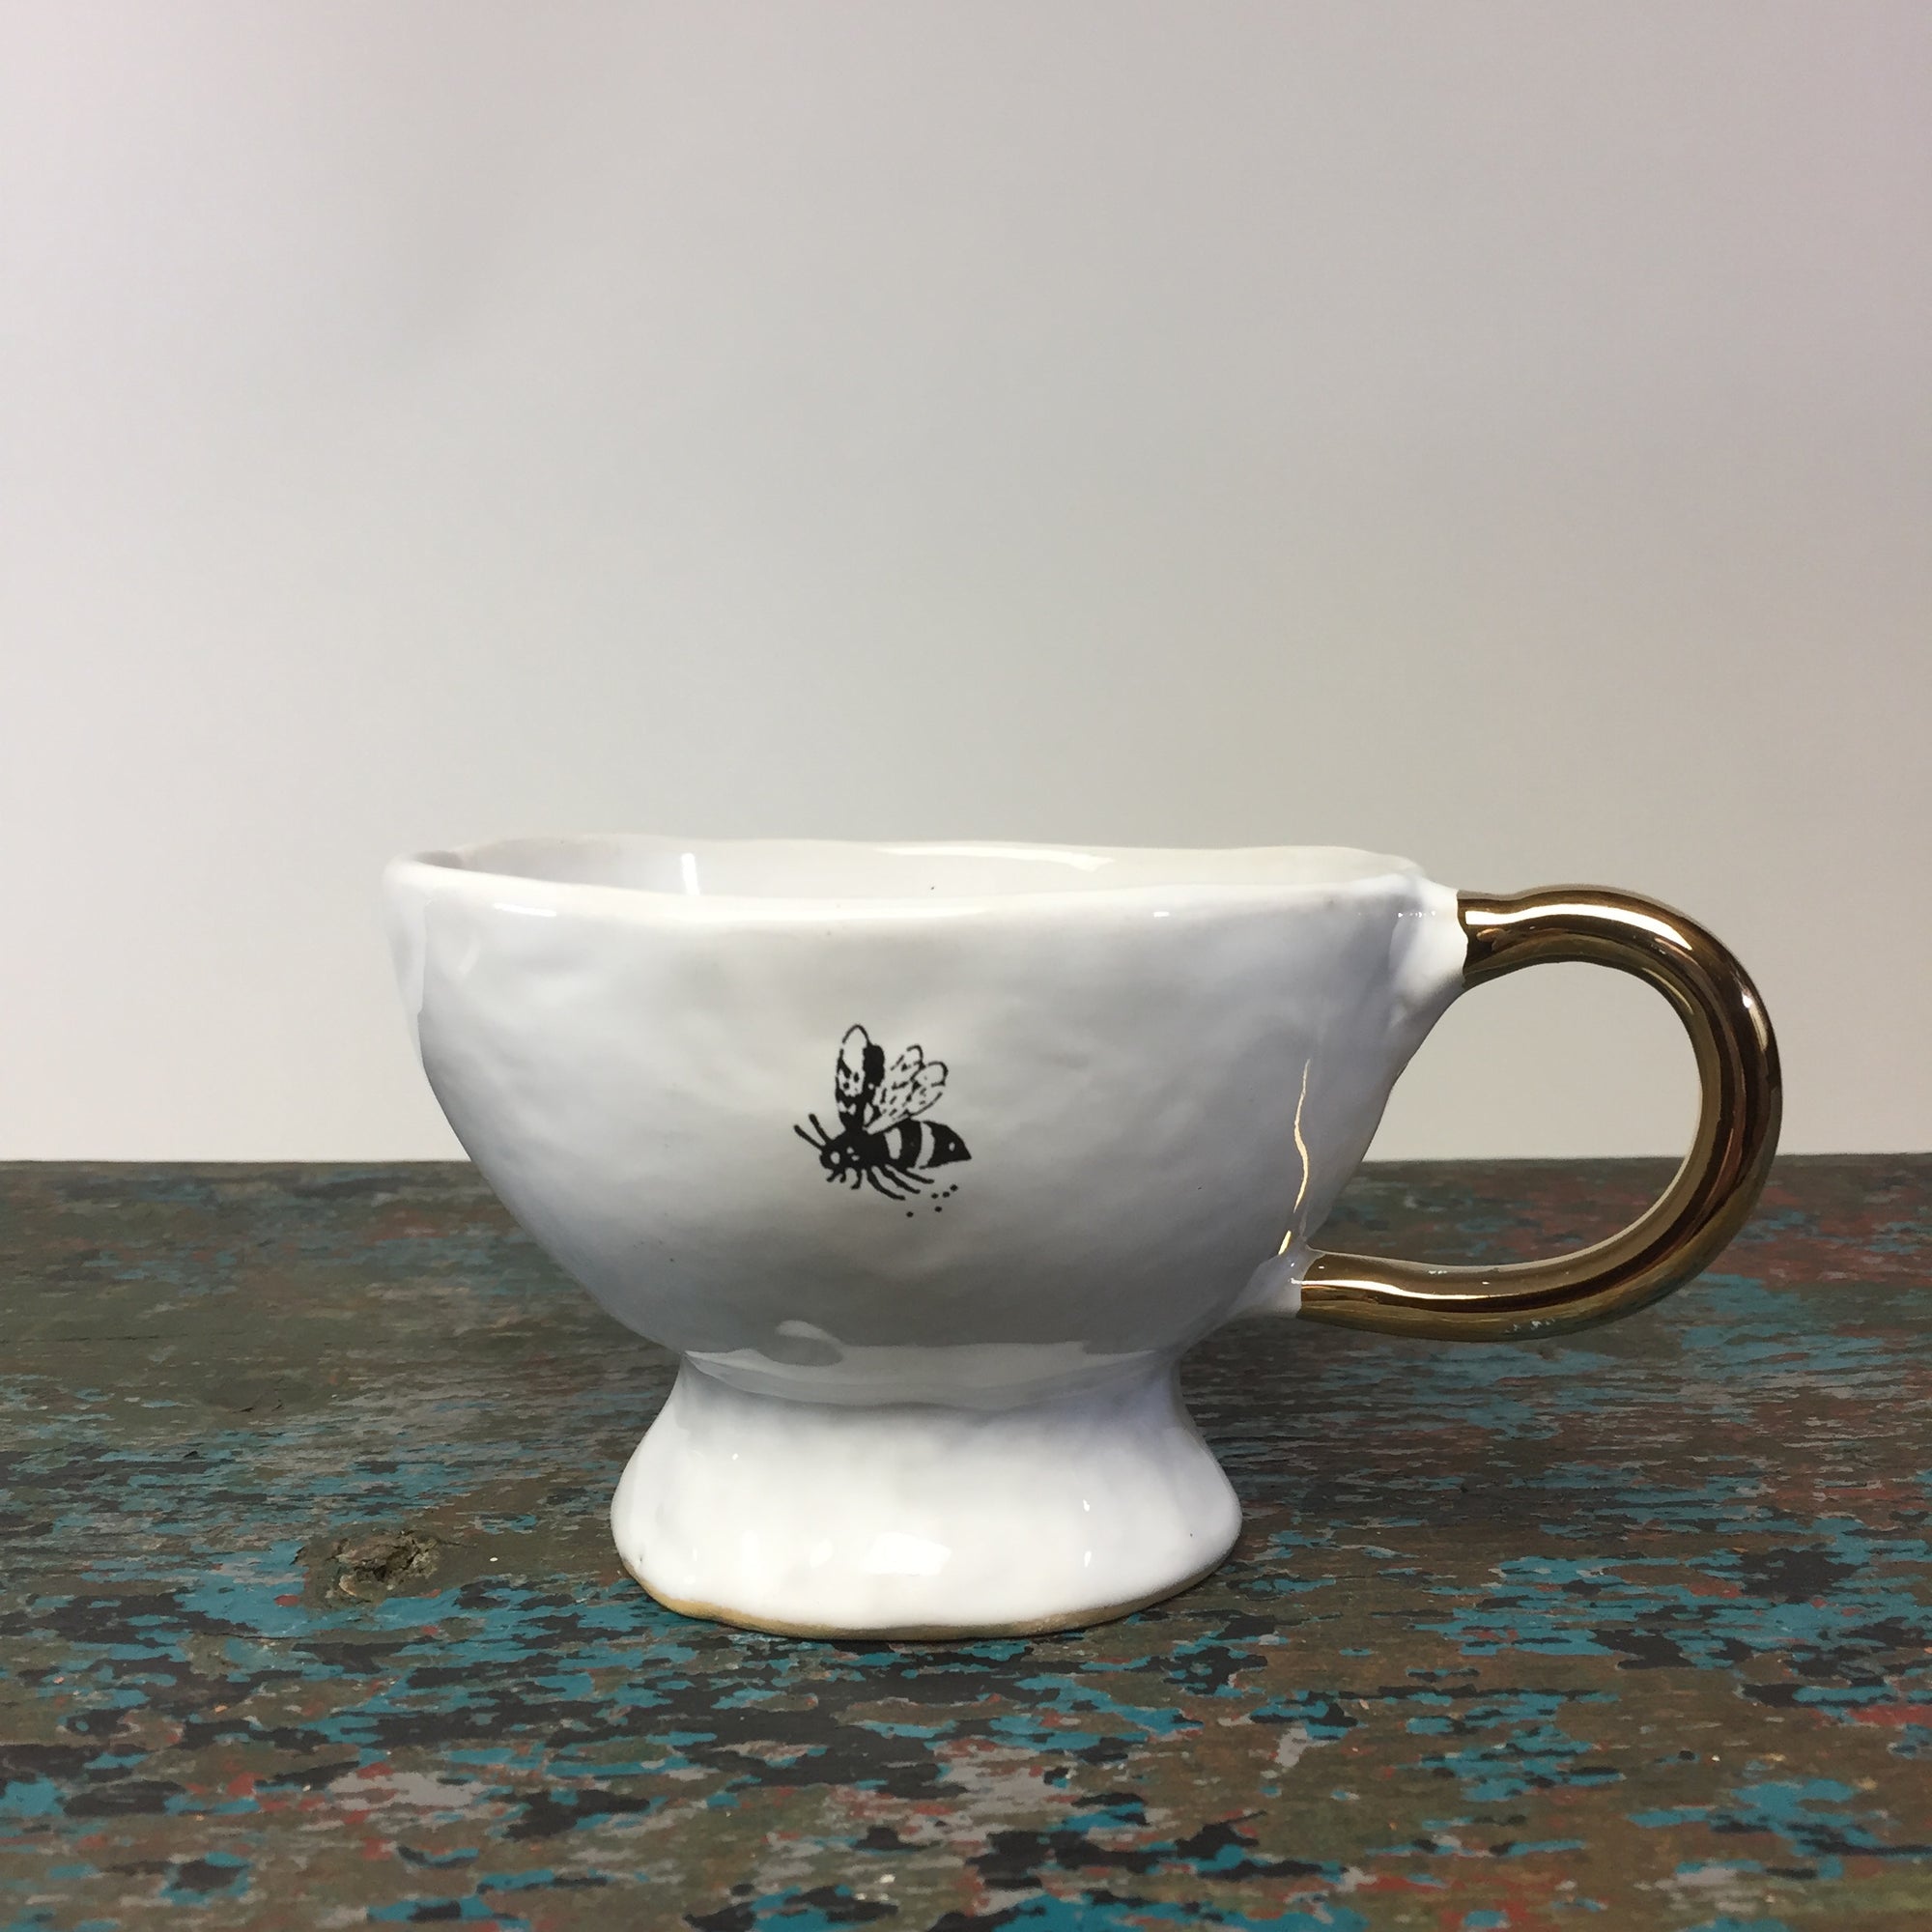 Kuhn Keramik Bee 'Glam' Office Coffee Cup